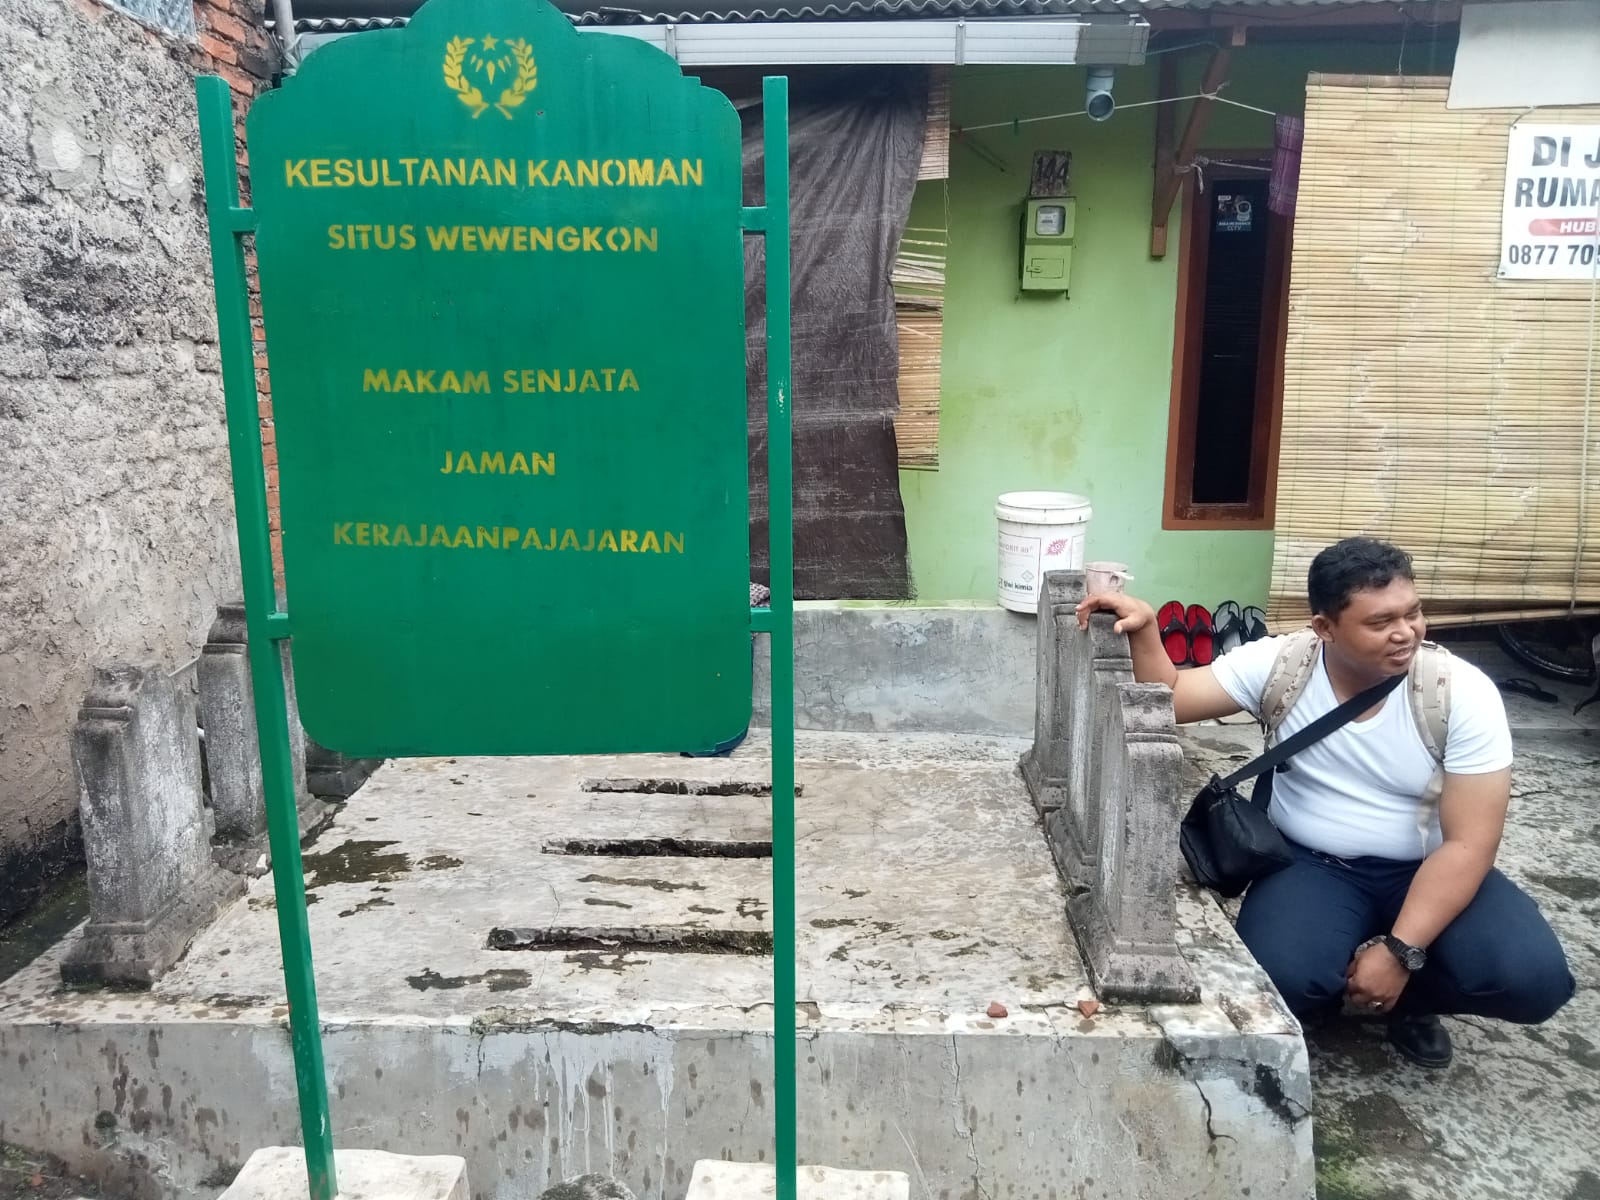 Kuburan Senjata Kerajaan Pajajaran di Cirebon, Kini Berbentuk Makam